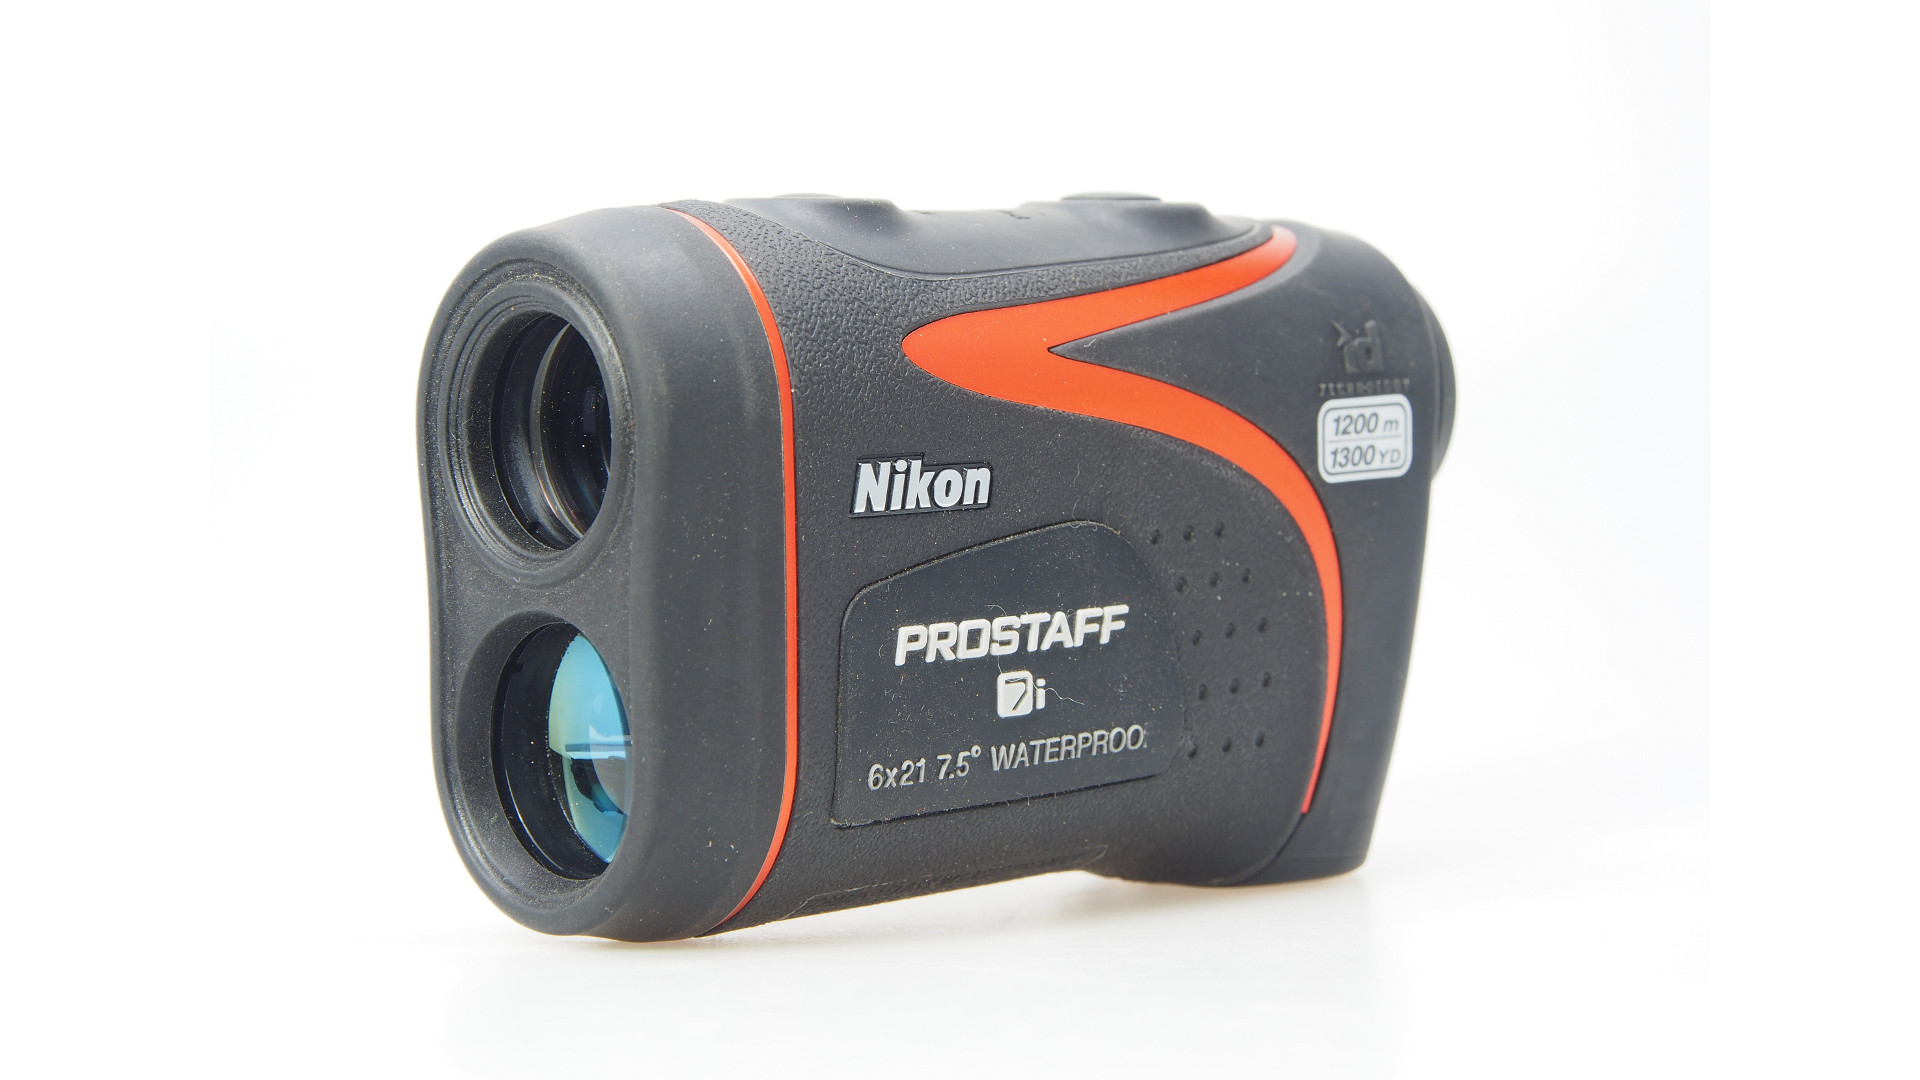 Nikon Prostaff 7i Laser Rangefinder Review